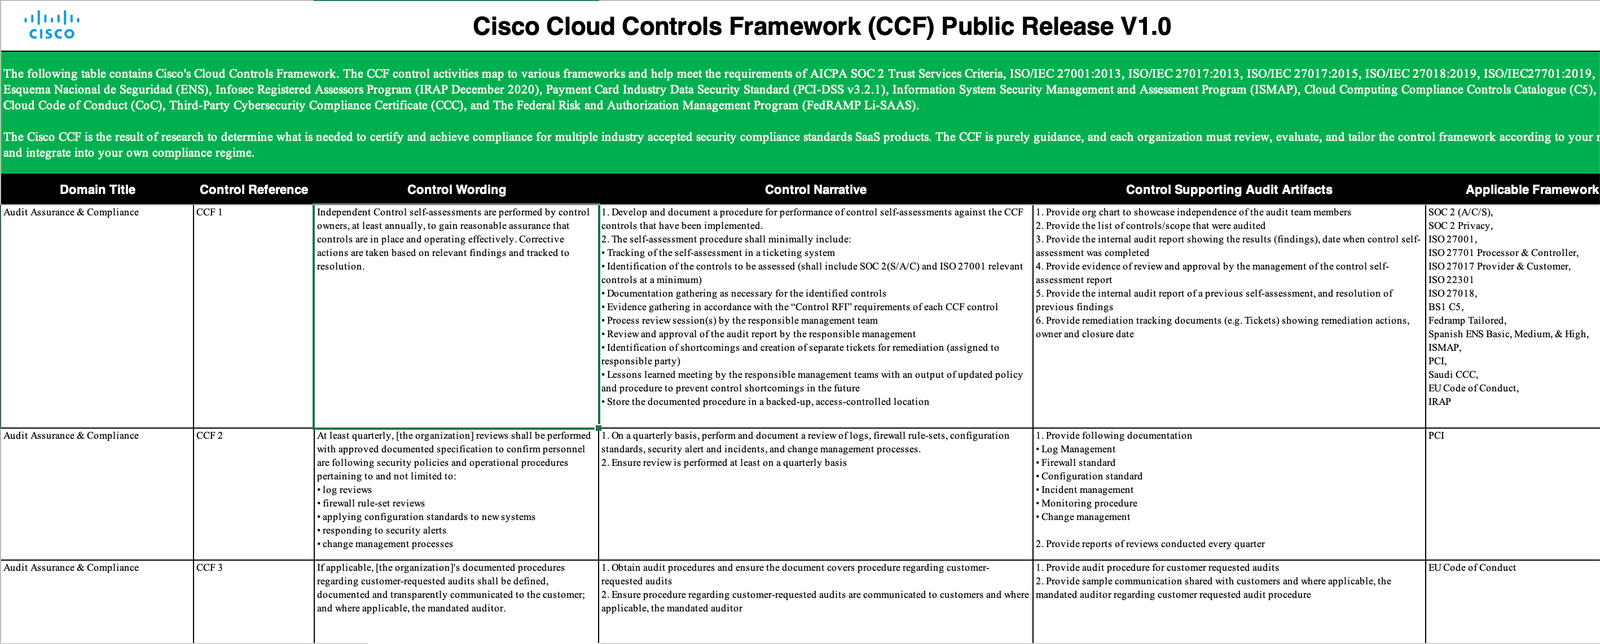 Cisco Cloud Controls Framework v1.0